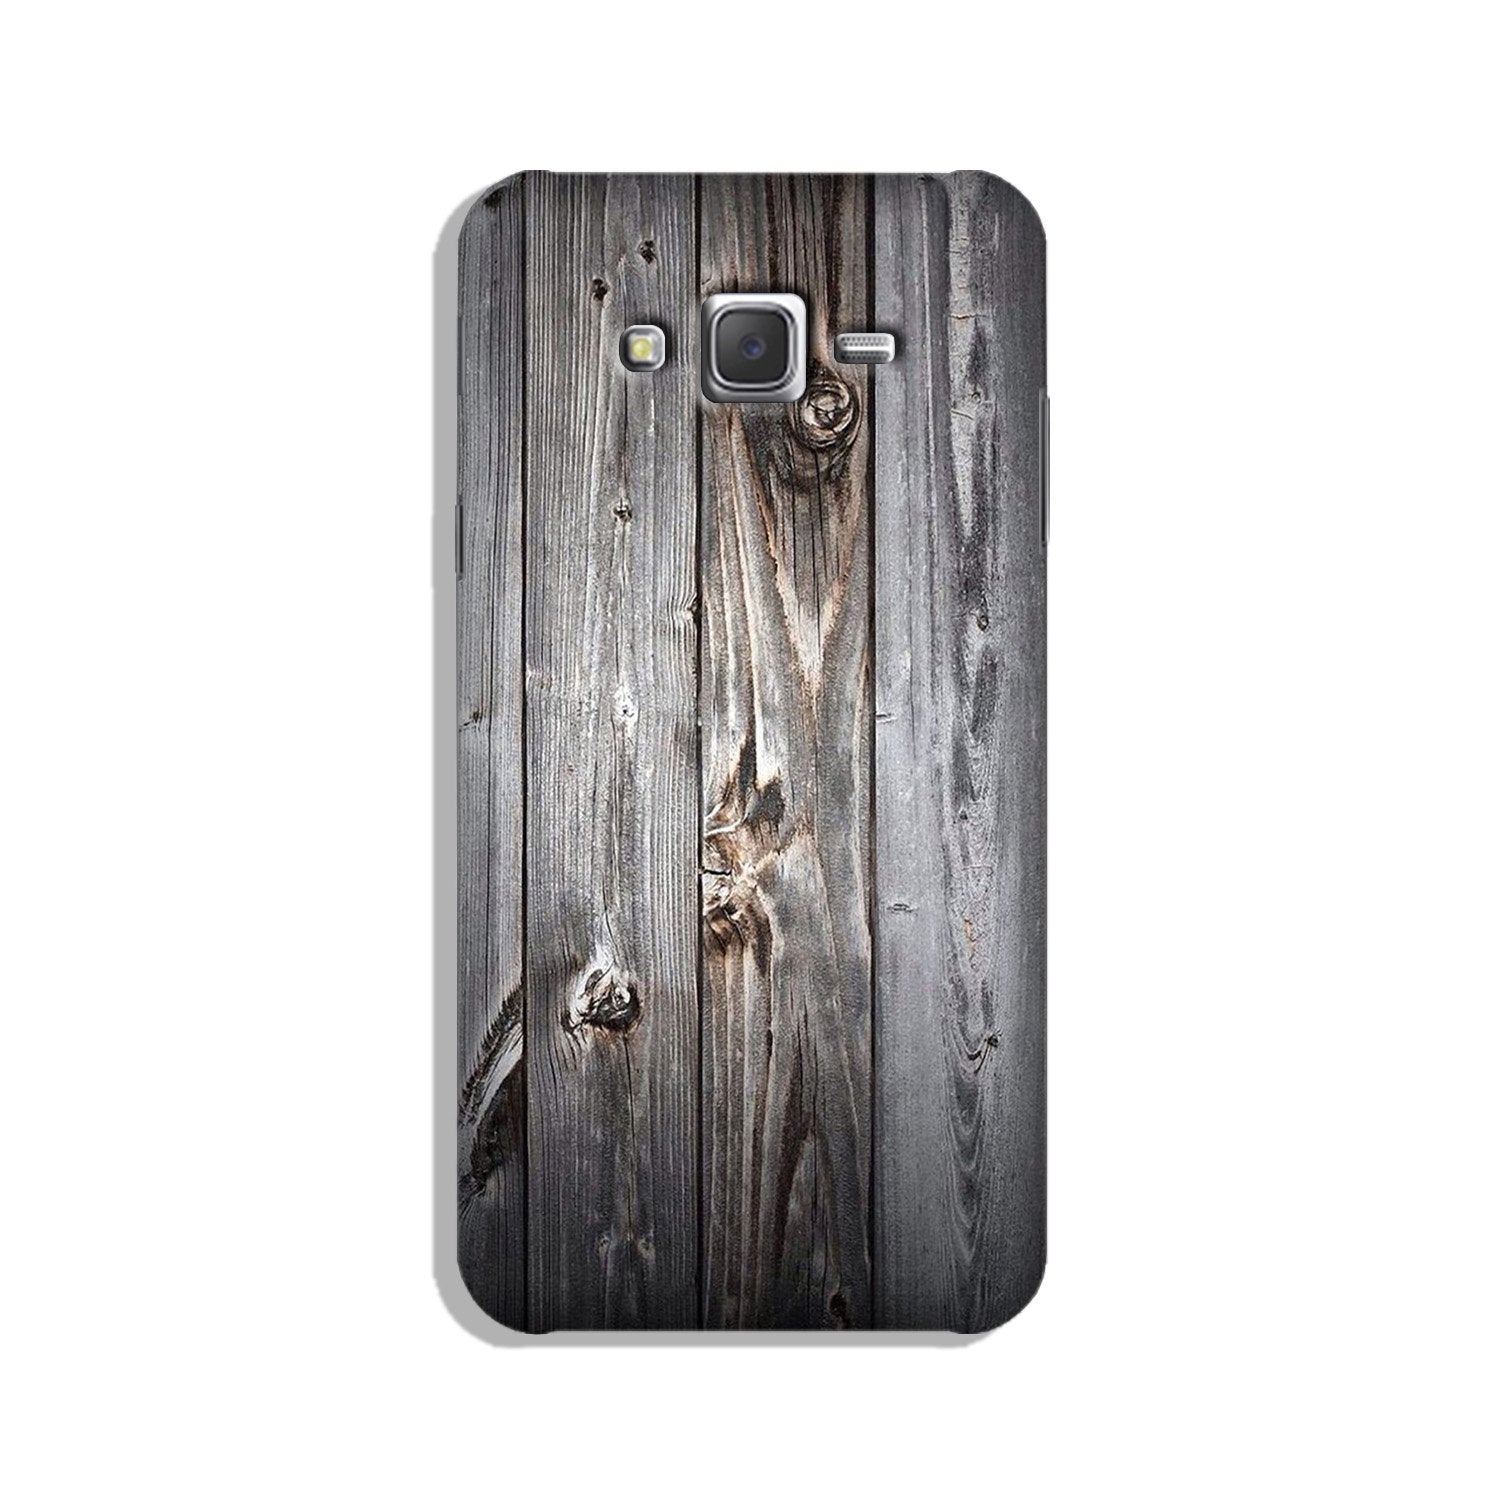 Wooden Look Case for Galaxy E7  (Design - 114)